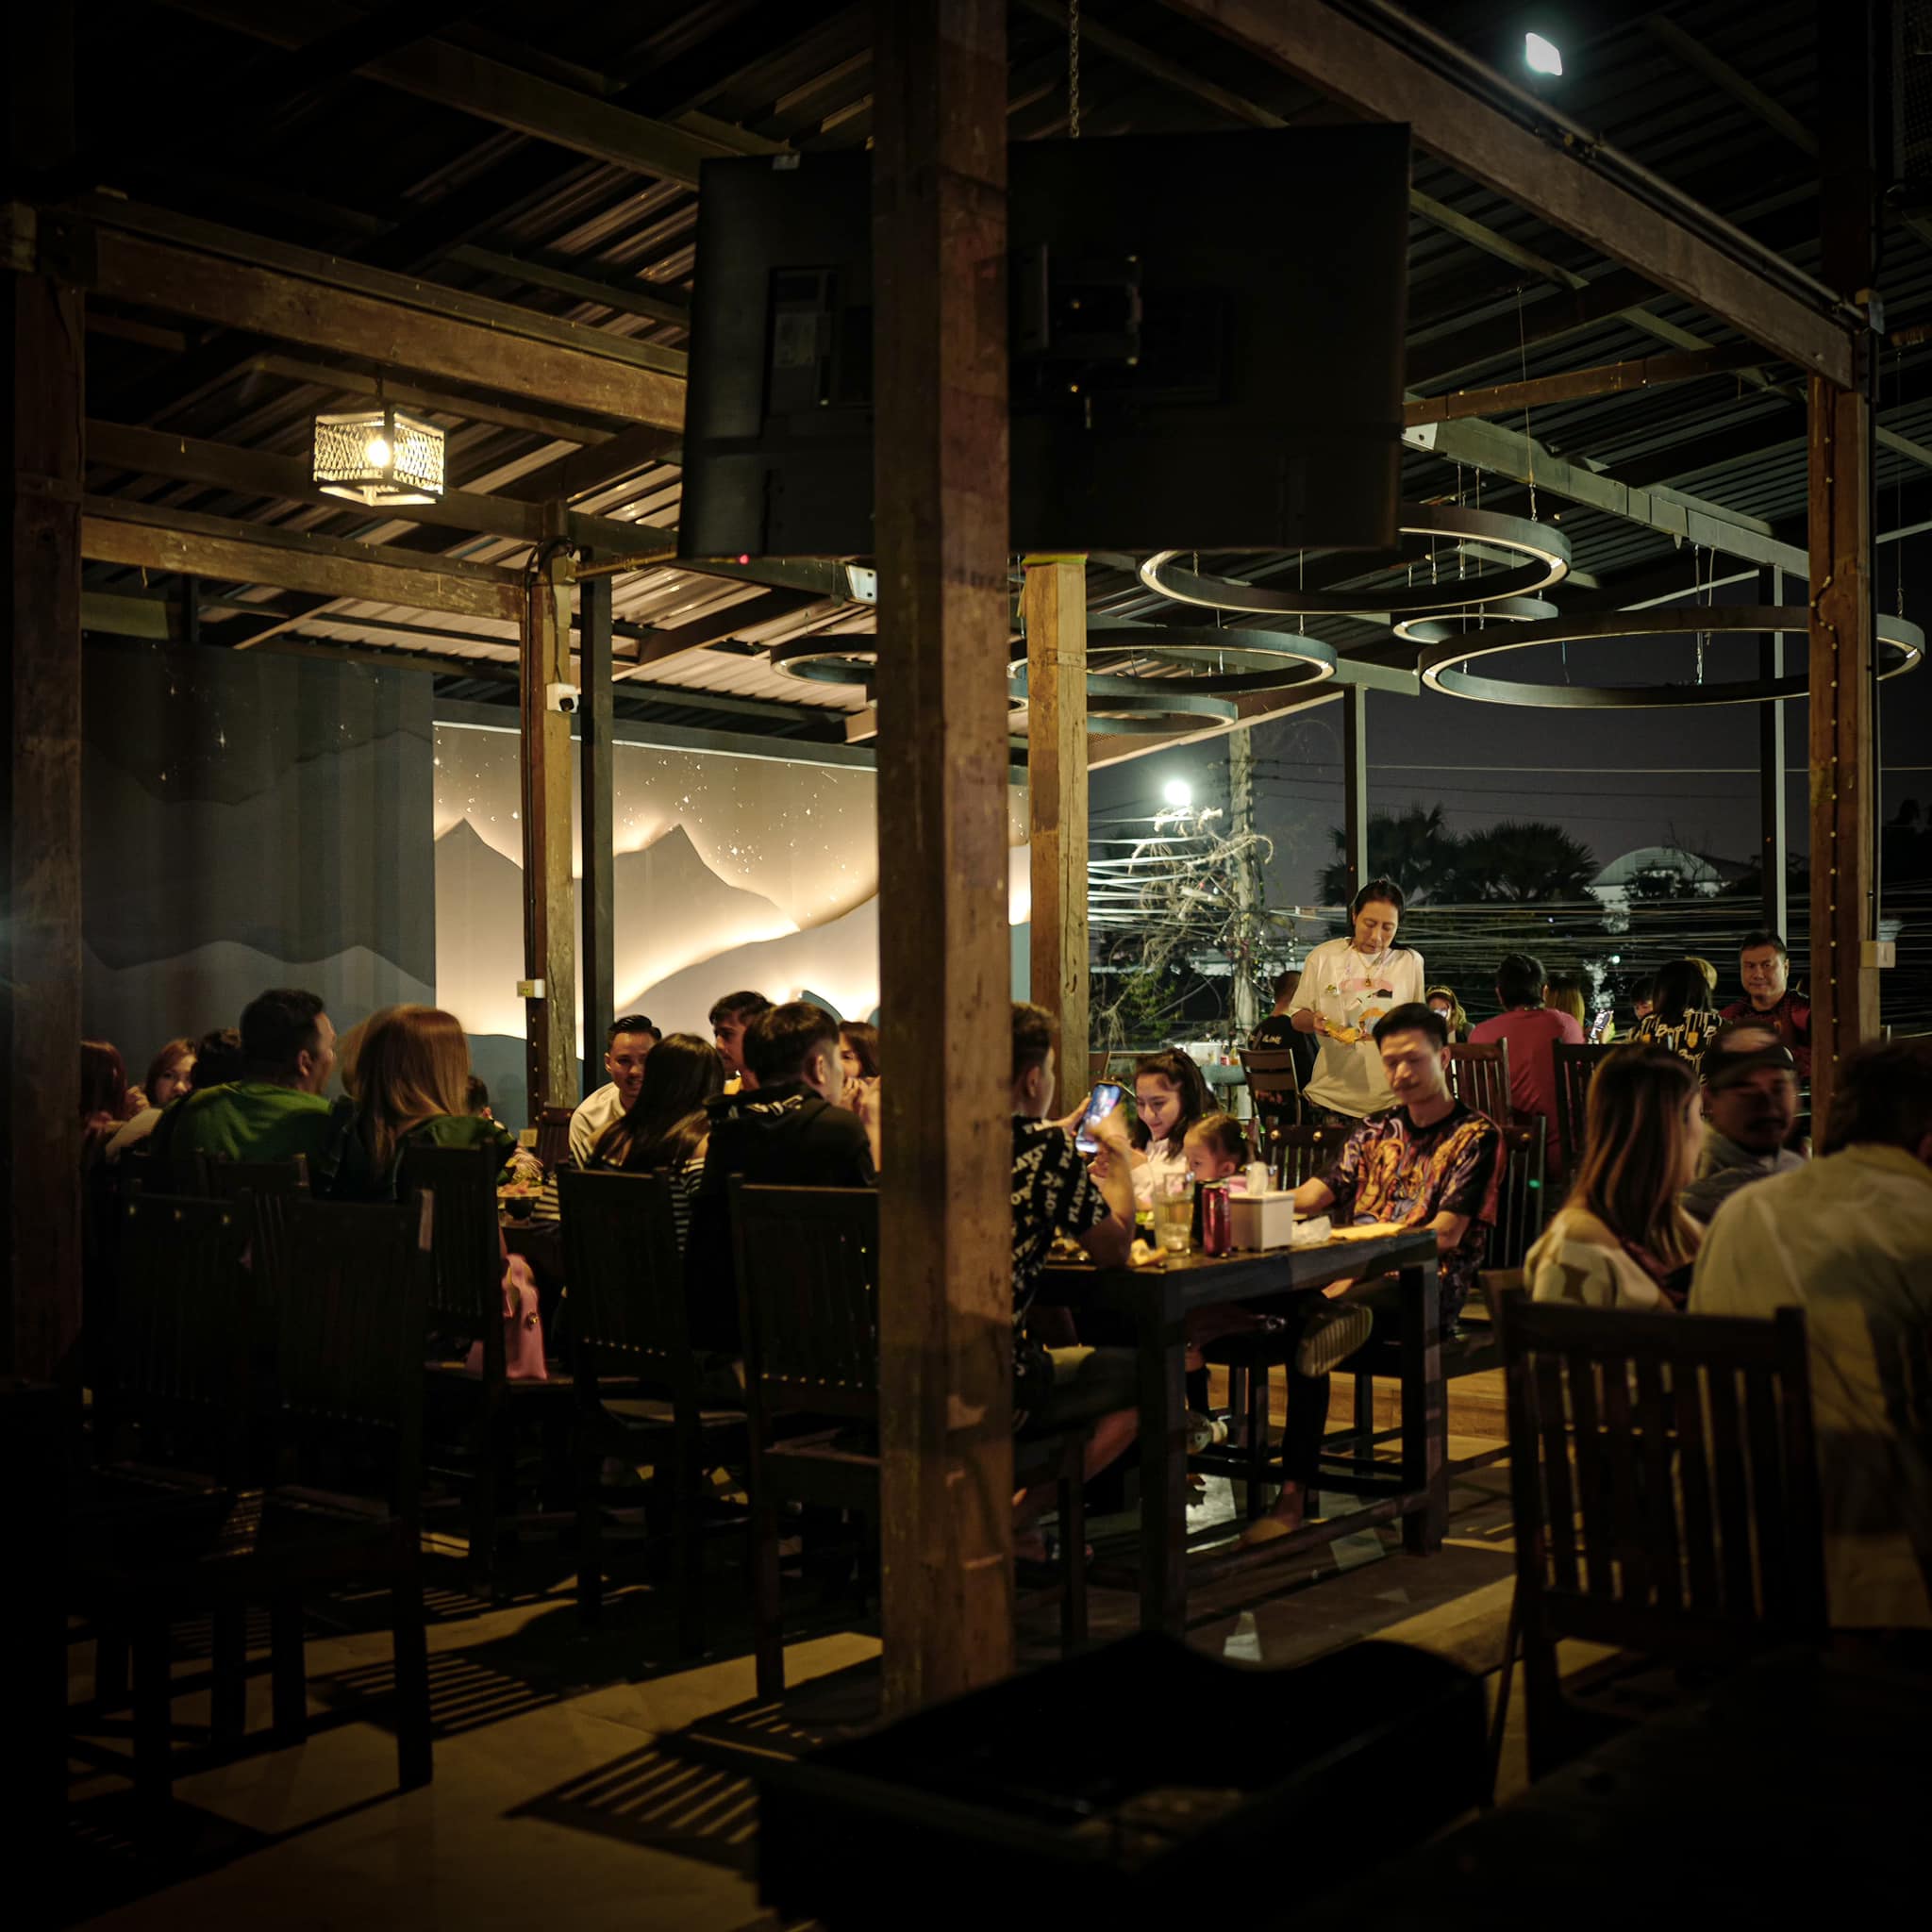 ท่าพระจันทร์ bar and bistro (ท่าพระจันทร์ bar and bistro) : Nakhon Ratchasima (นครราชสีมา)